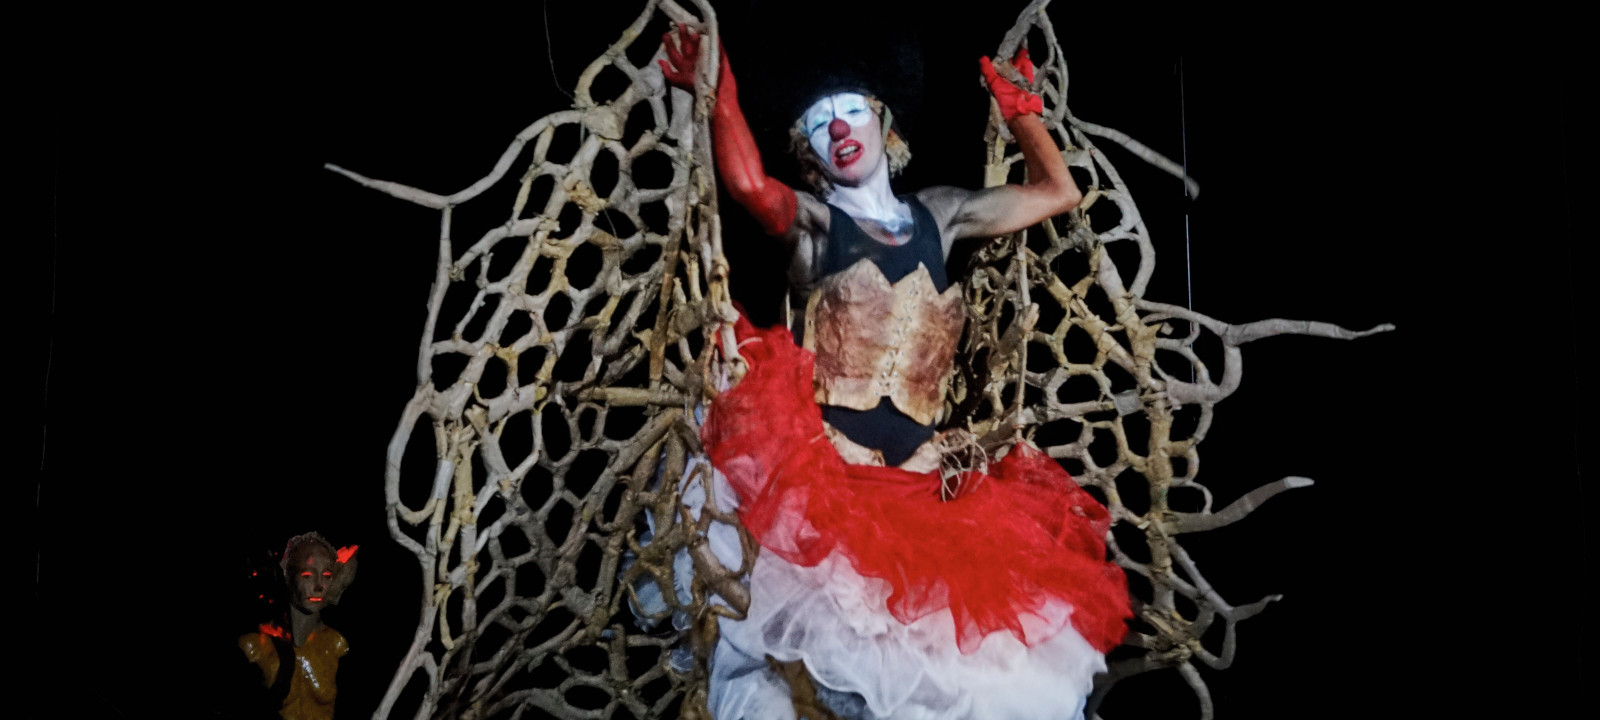 Chair à poème, solo clown bouffon avec Barbara Gay alias Pouk Personne, Rémi Chazerault Peaudeau, régisseur et éclairagiste. Crédit photo : Flora Ledoux